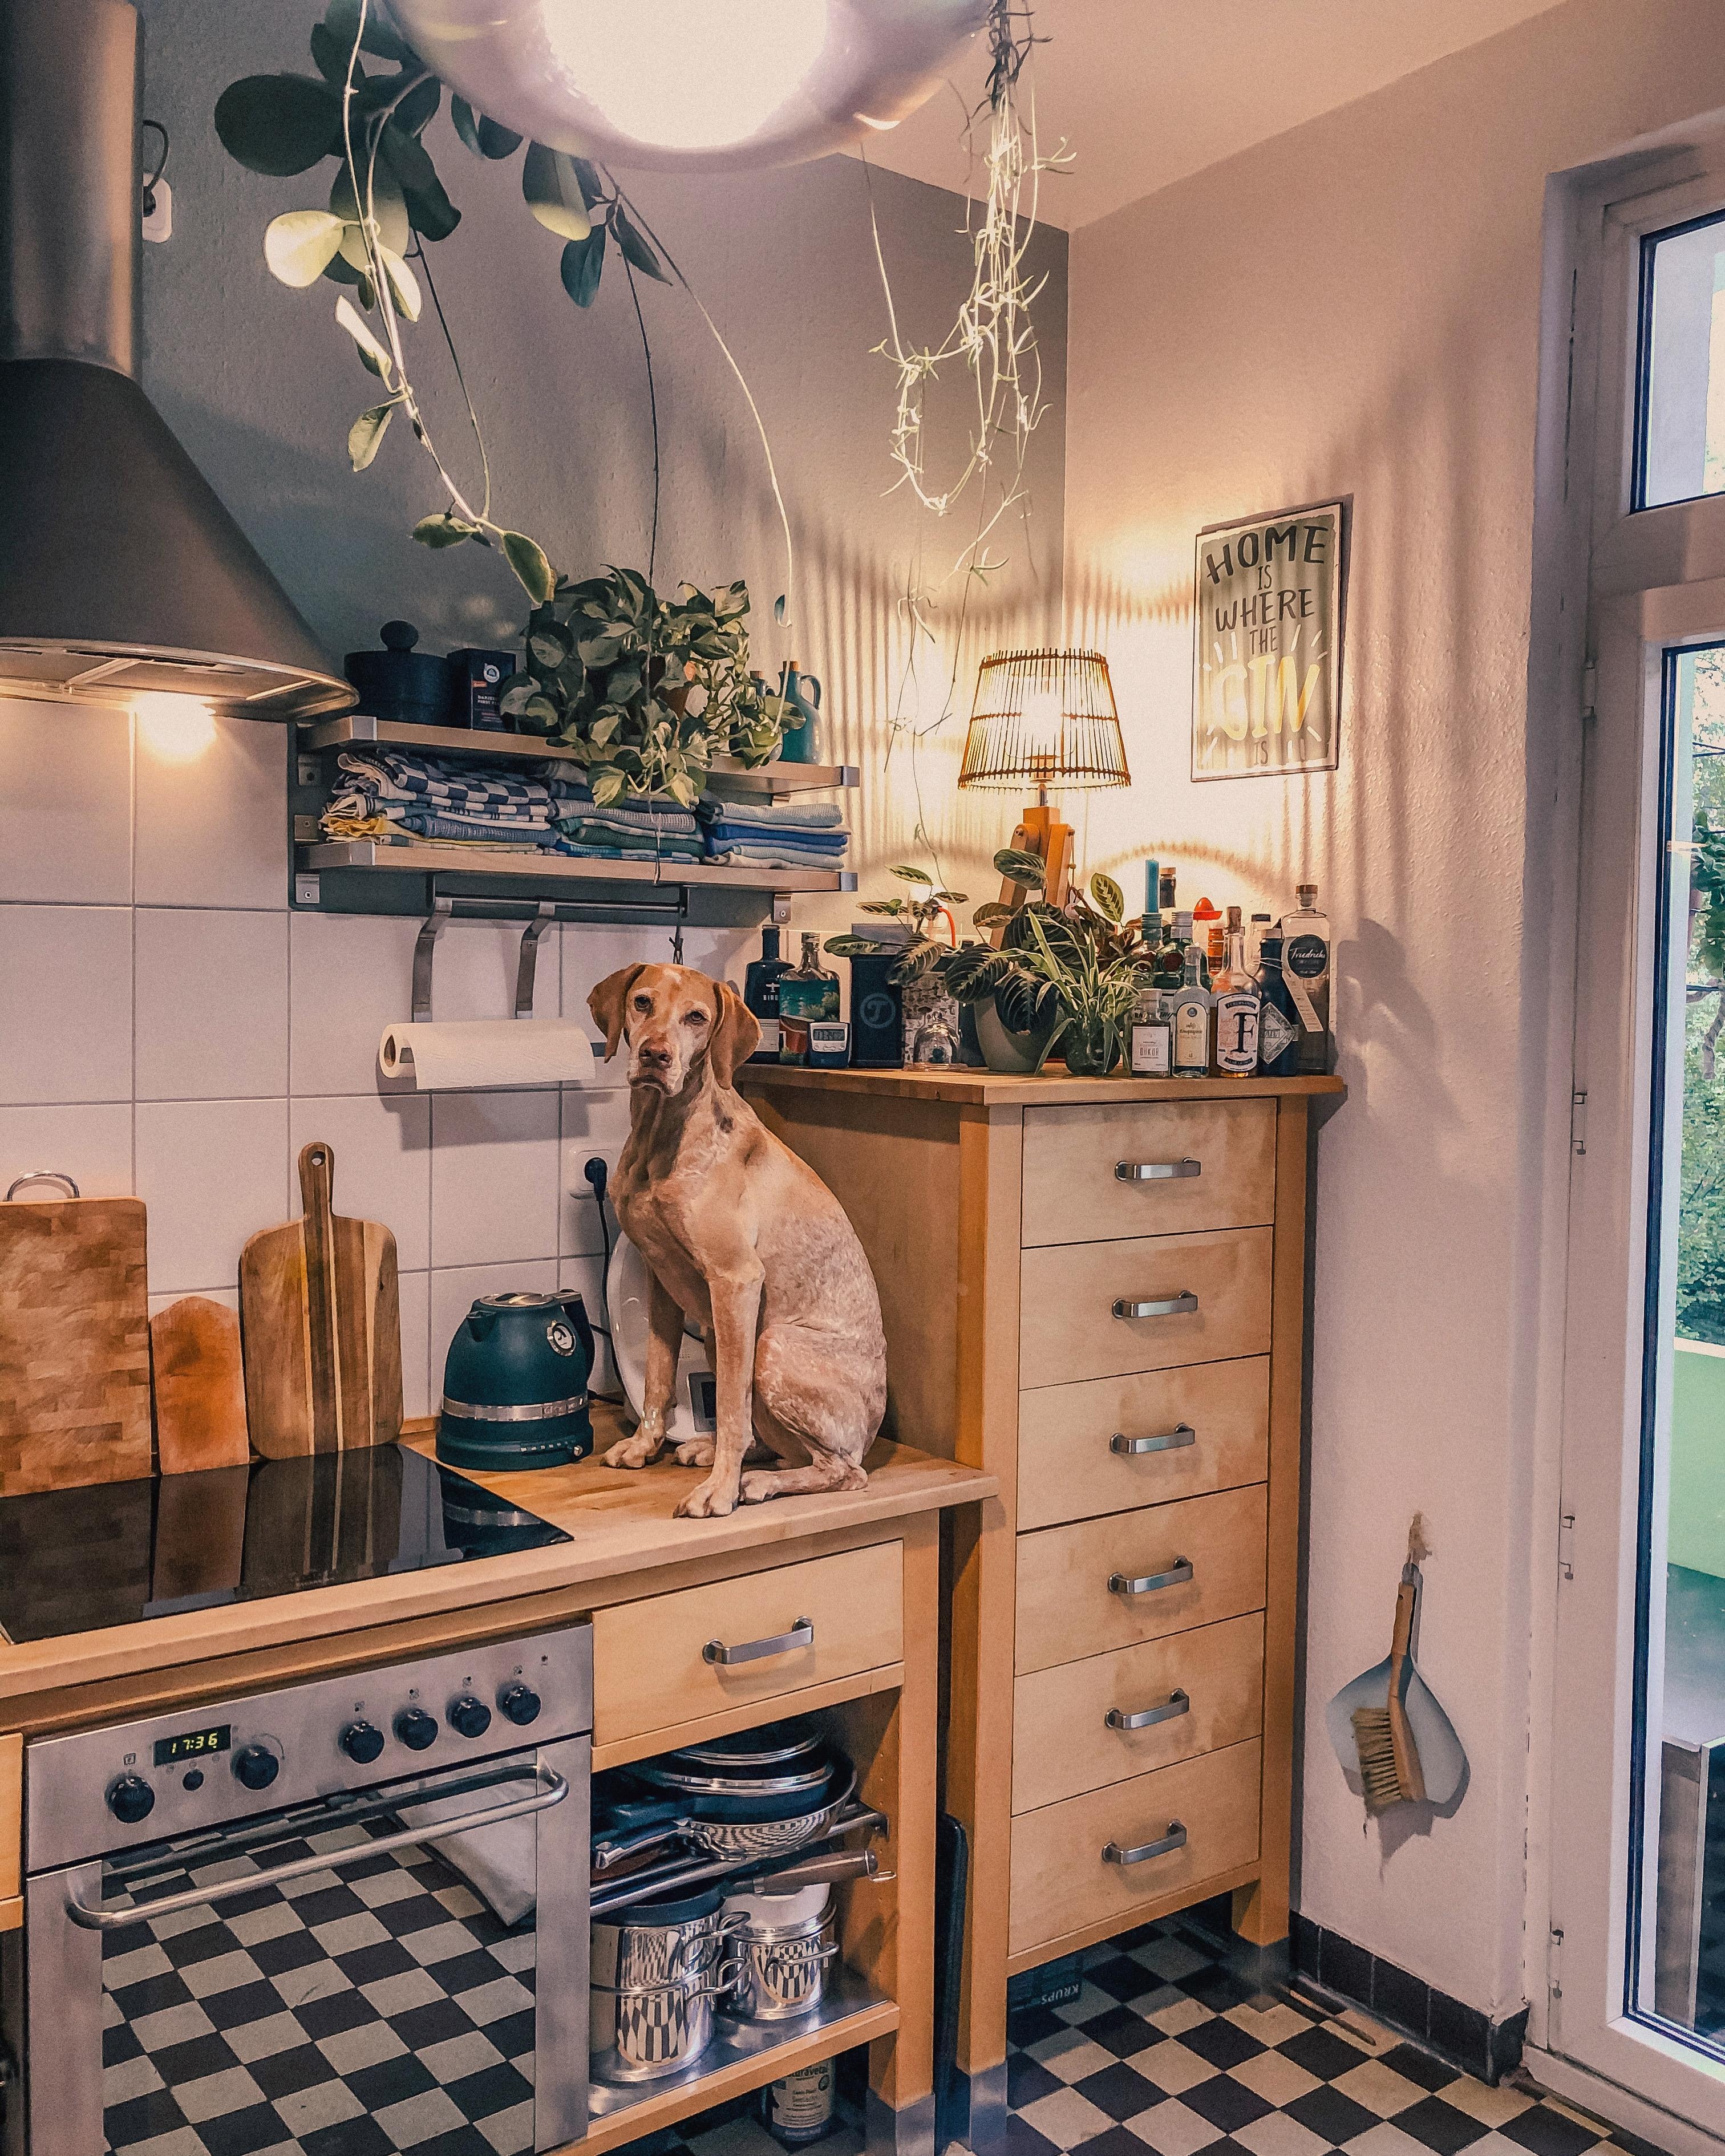 Warum immer nur Katzen auf der Arbeitsplatte 🤔
#küche #küchenliebe #homesweethome #hund #solebenwir